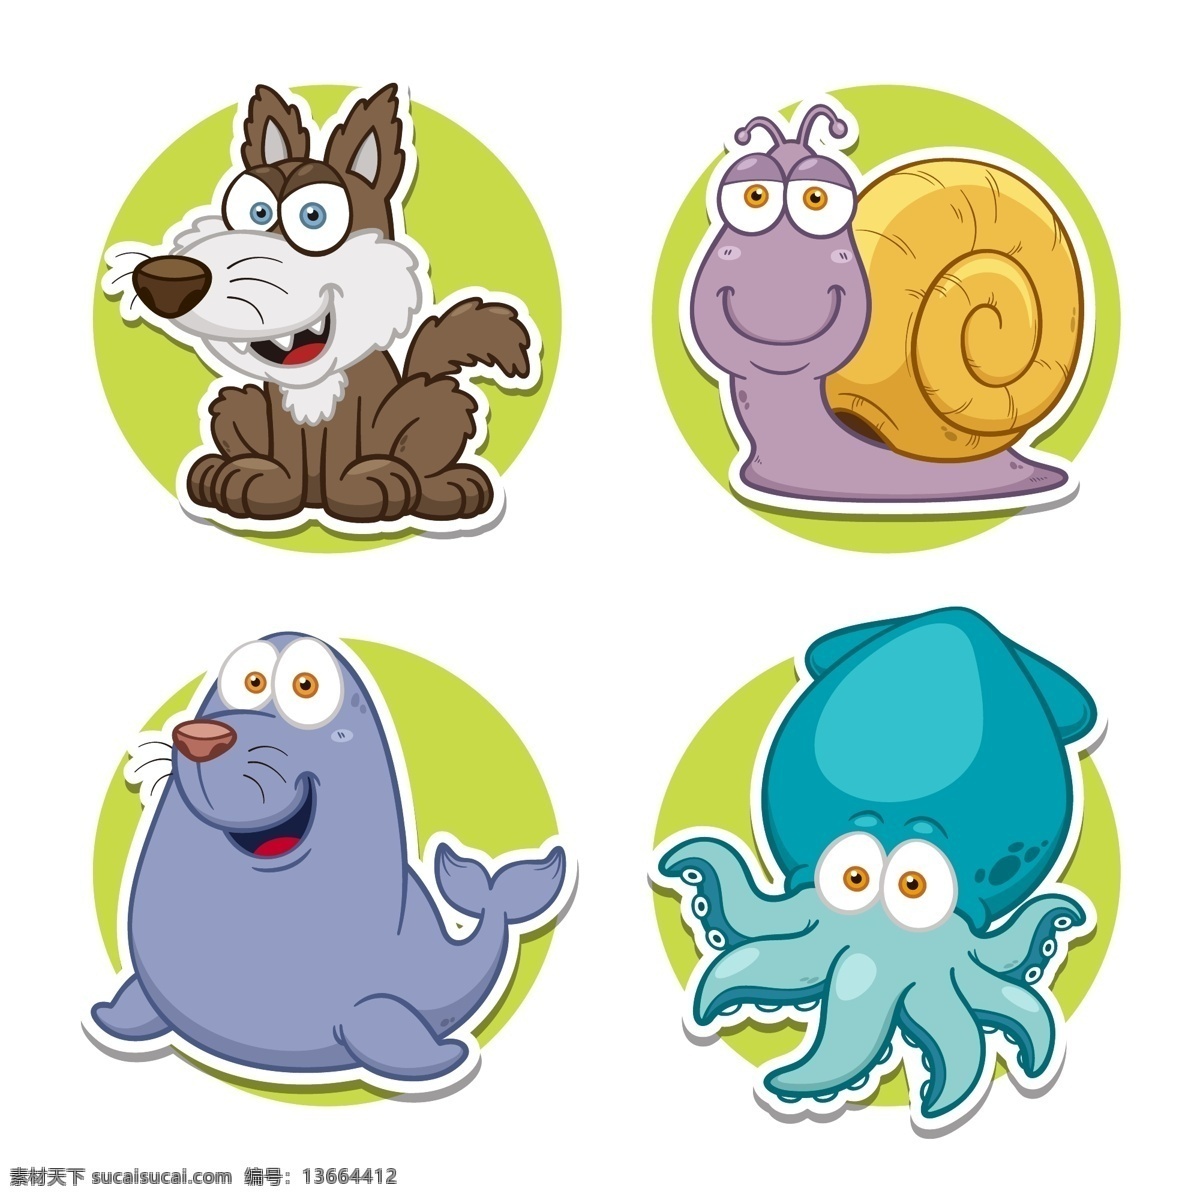 卡通动物图片 动物 卡通 插画 蜗牛 章鱼 黄鼠狼